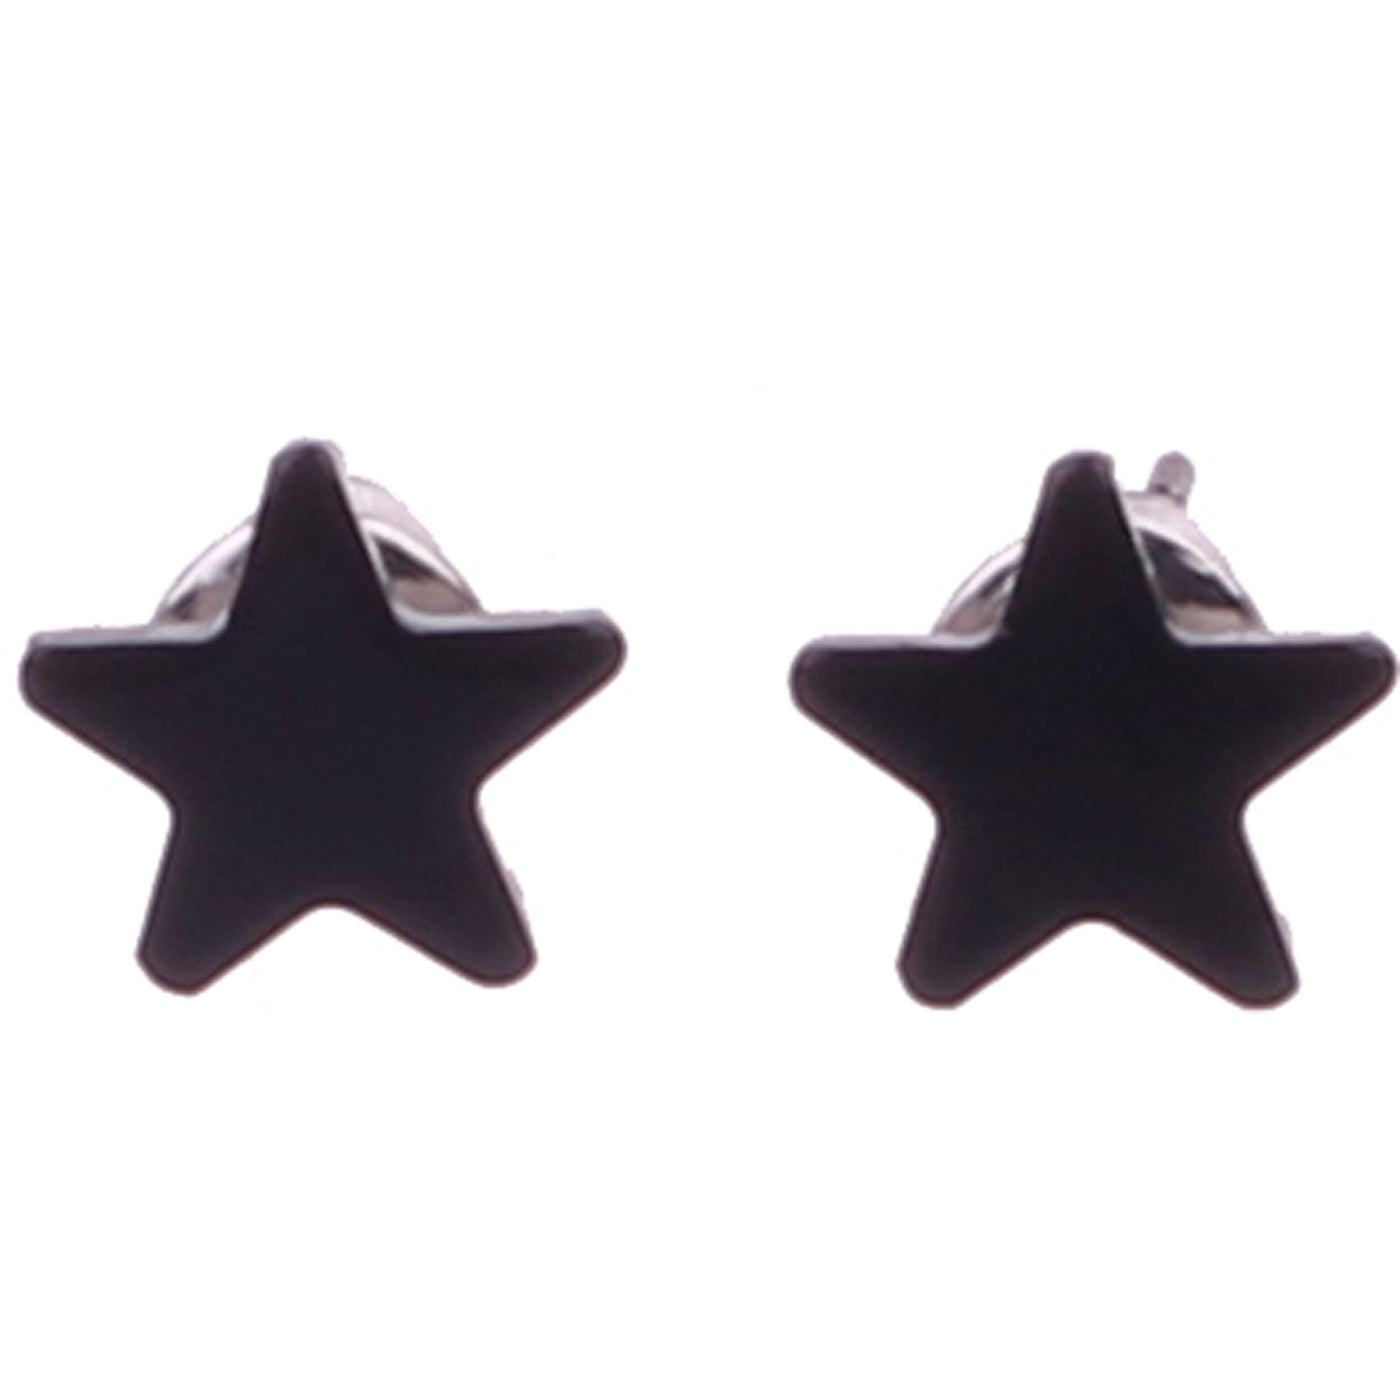 Star earrings 9mm